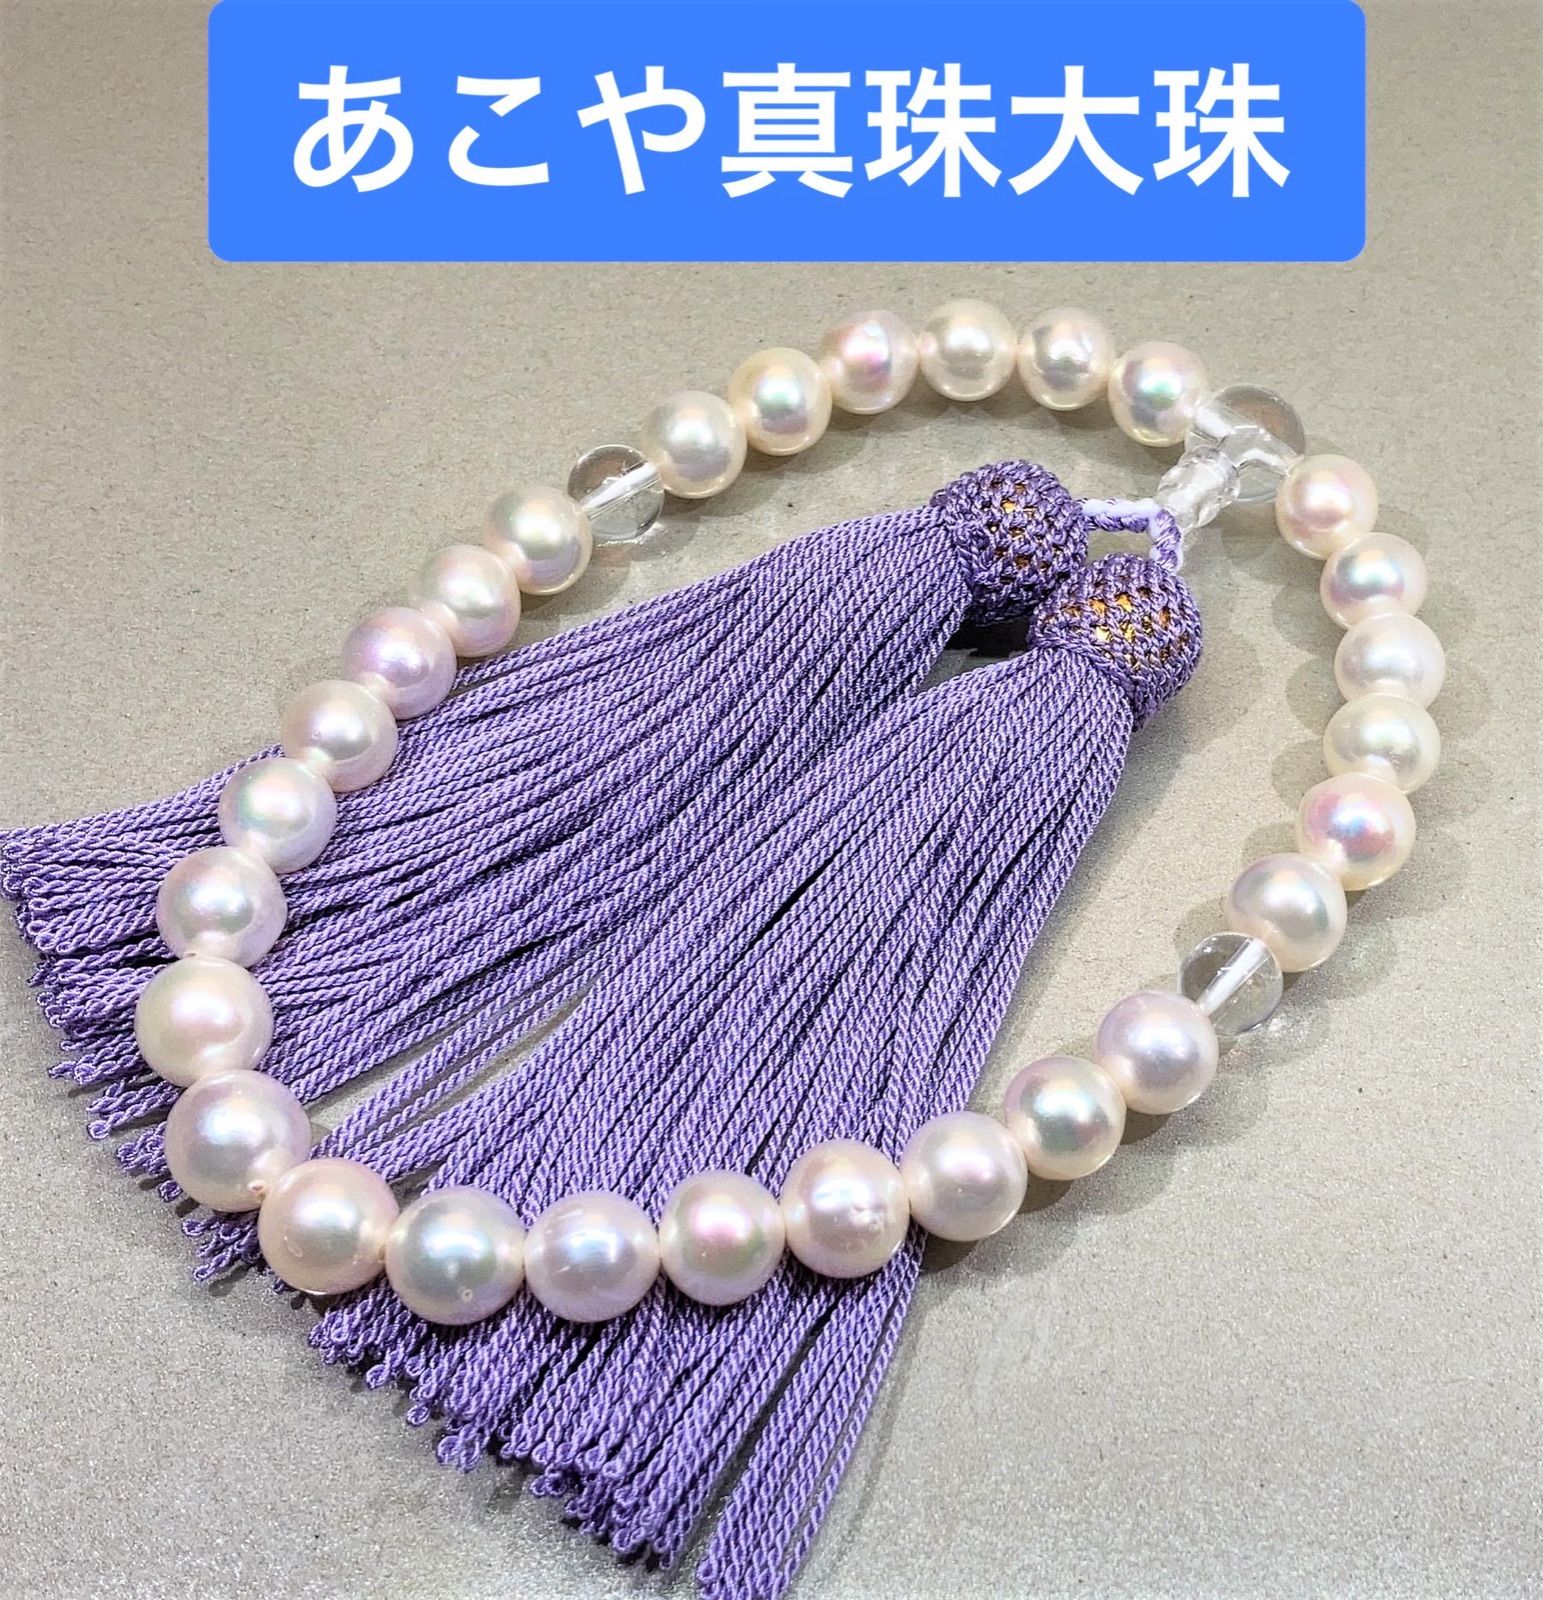 超大珠 あこや真珠 念珠 数珠 全宗派使用可能 保証&手引き付き